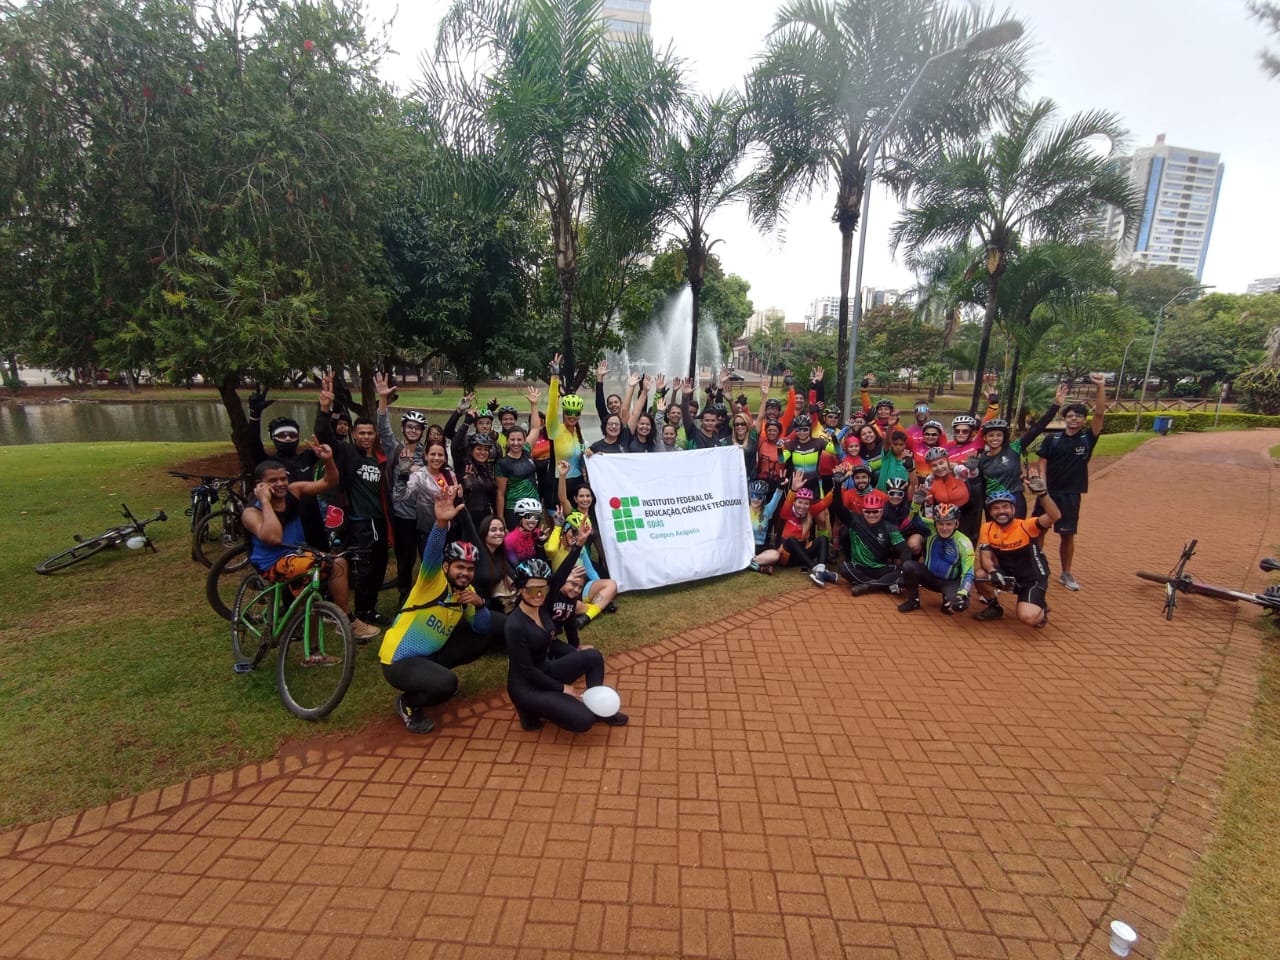 Participantes e colaboradores do evento em parada no Parque Ipiranga